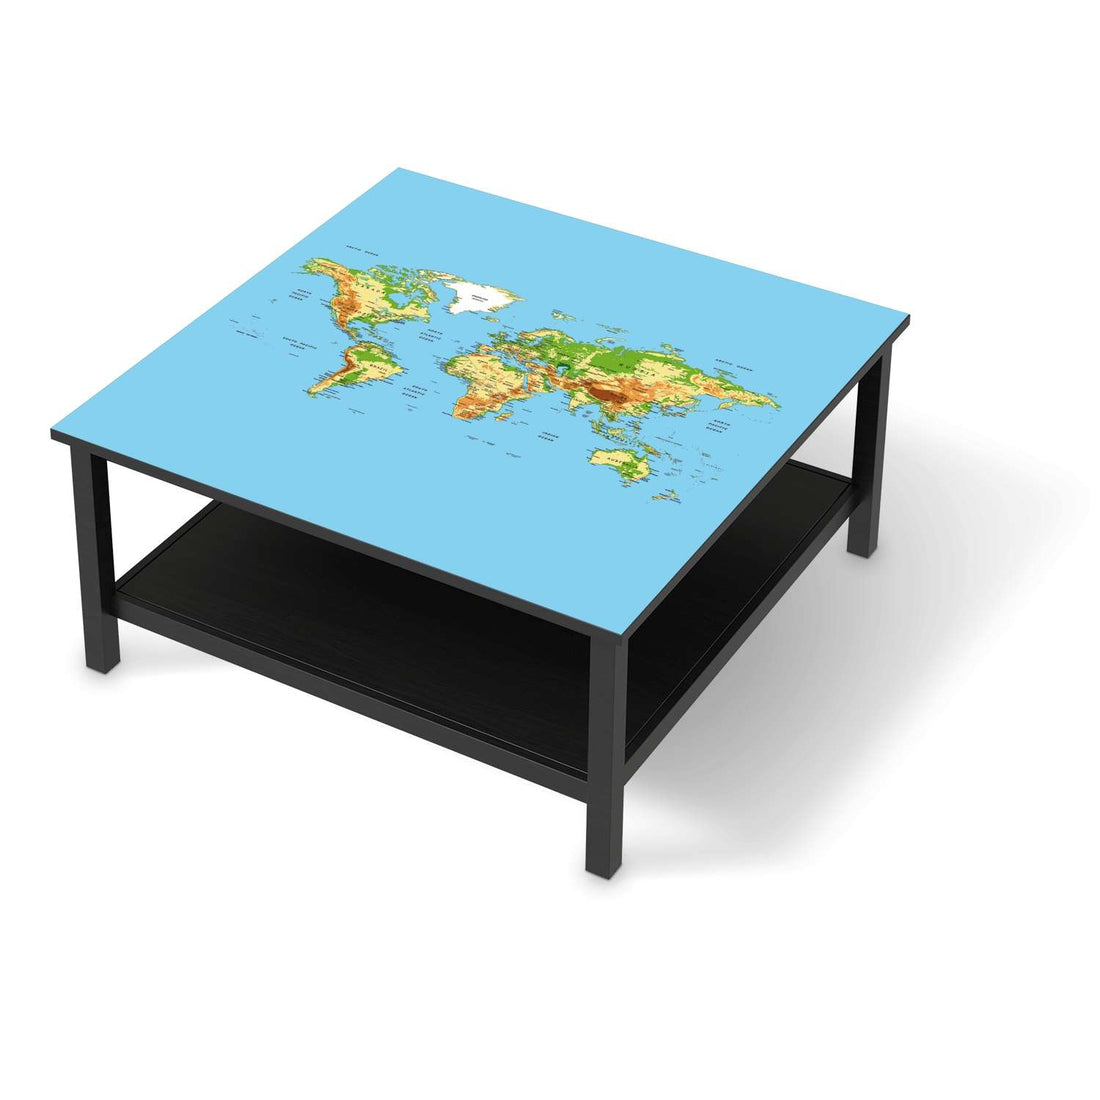 Klebefolie für Möbel Geografische Weltkarte - IKEA Hemnes Couchtisch 90x90 cm - schwarz